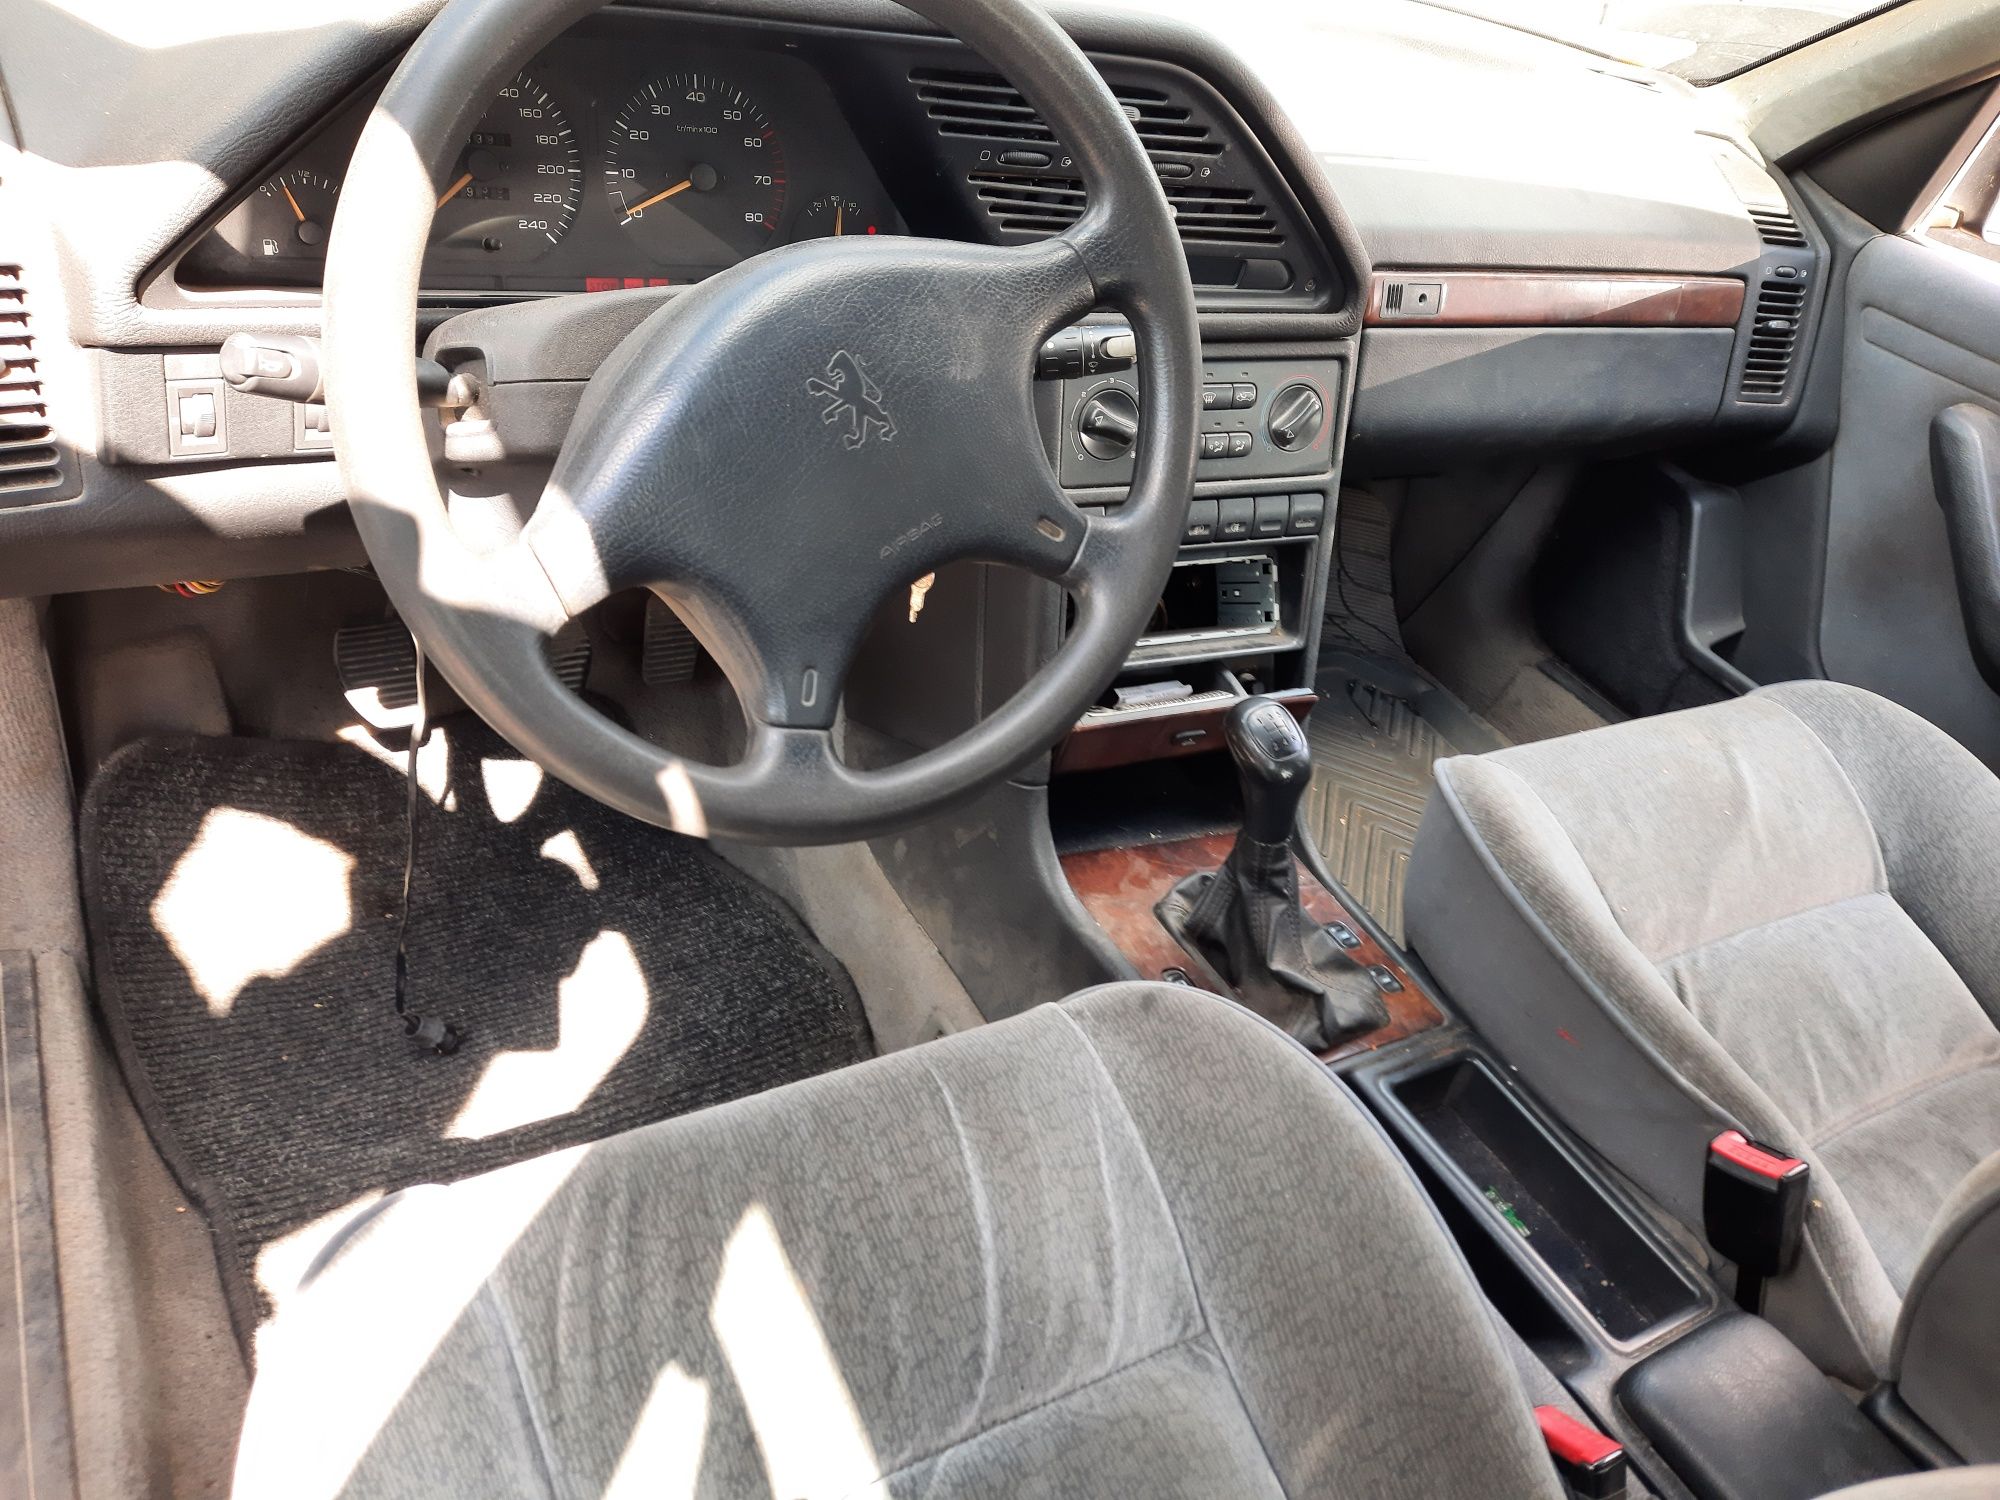 Peugeot 405 пежо 605 сидения сидушки карты ручки потолок кавер пластик